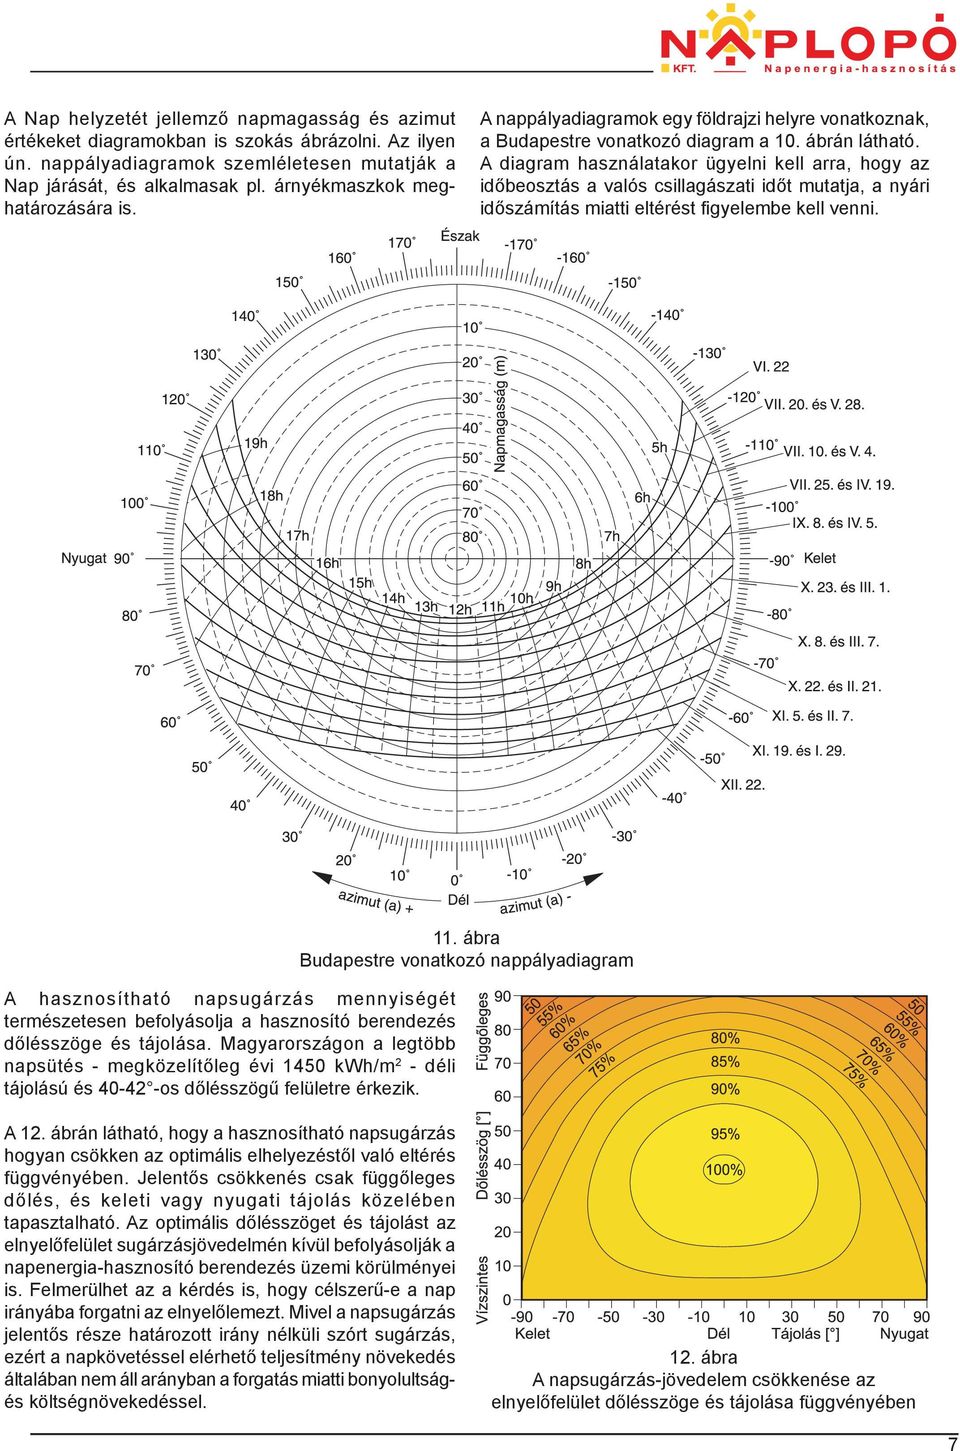 A diagram használatakor ügyelni kell arra, hogy az időbeosztás a valós csillagászati időt mutatja, a nyári időszámítás miatti eltérést figyelembe kell venni.